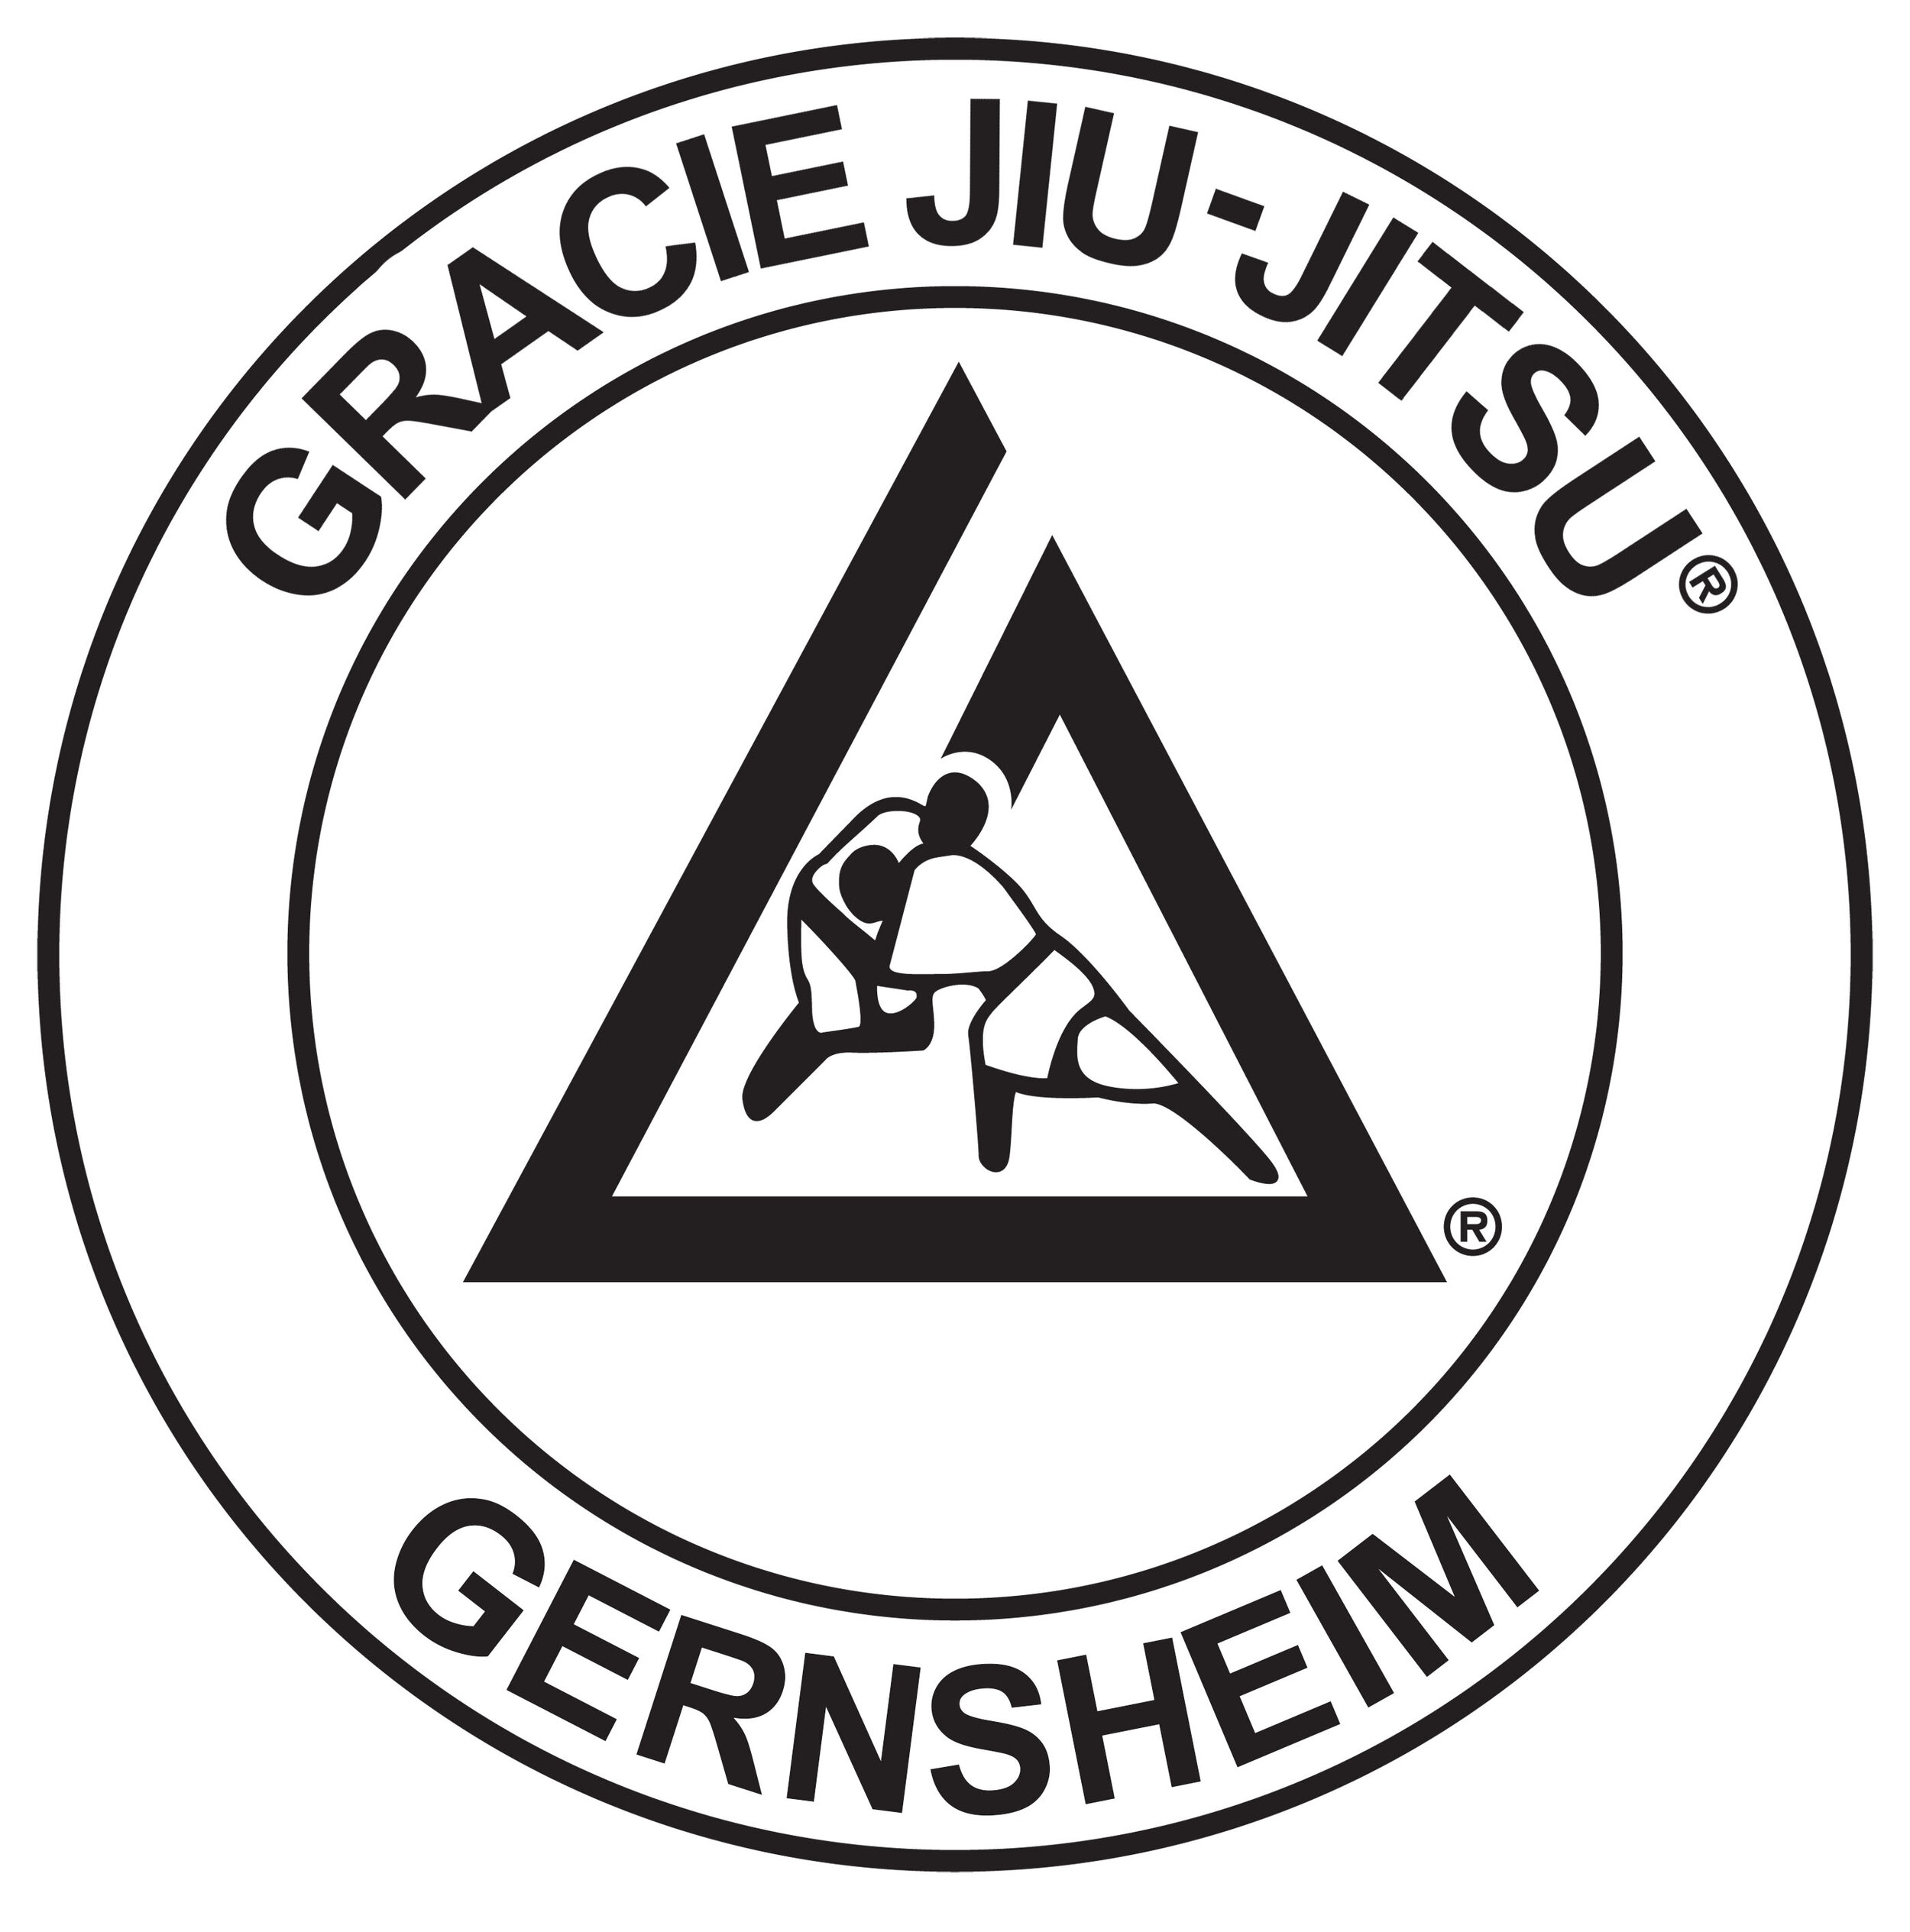 Gracie Jiu-Jitsu® Gernsheim